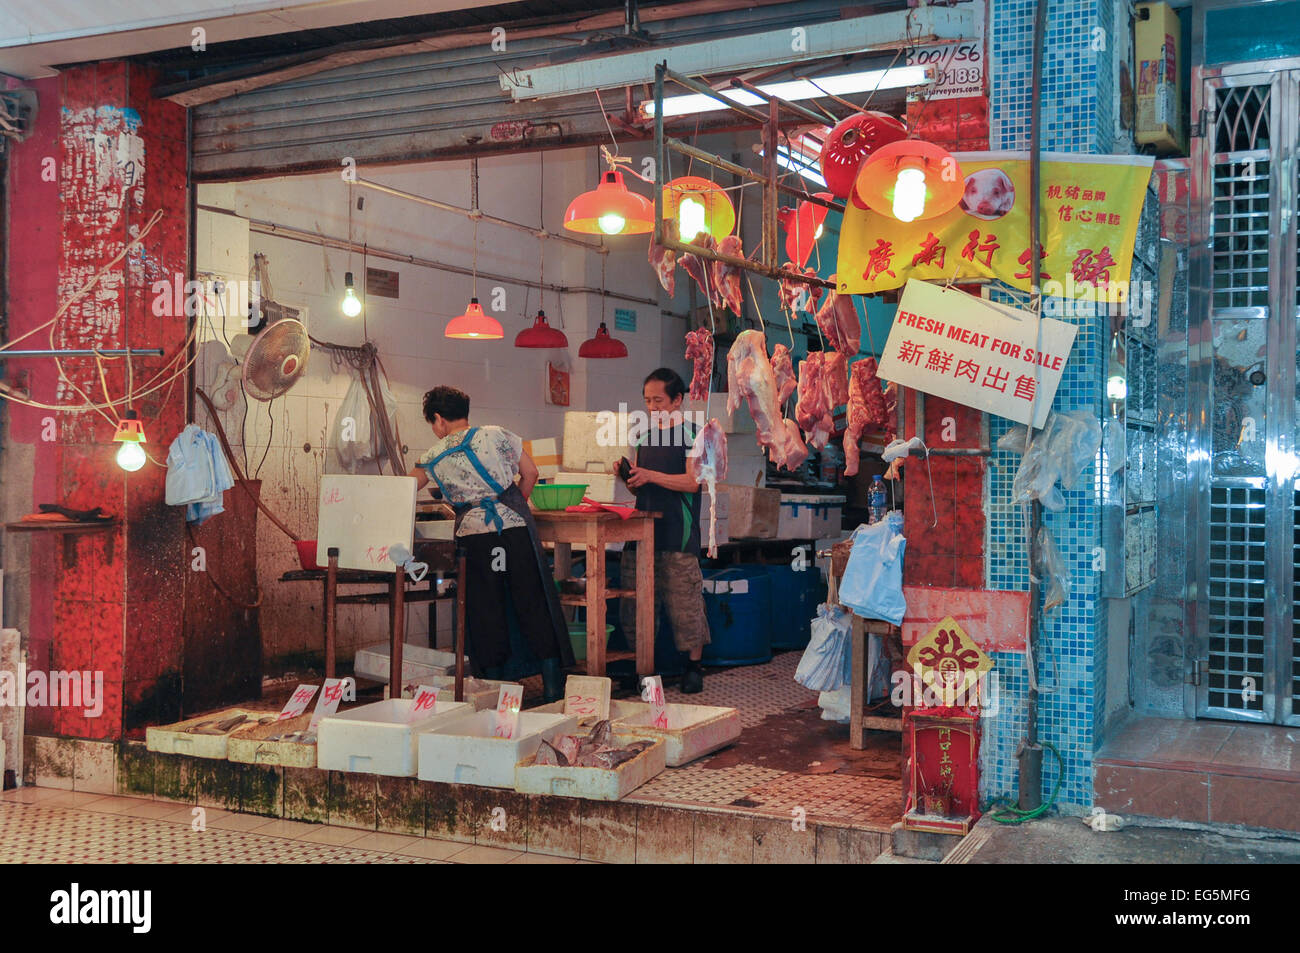 Frischfleisch-Stall - Gage Street Wet Market, Hong Kong Stockfoto